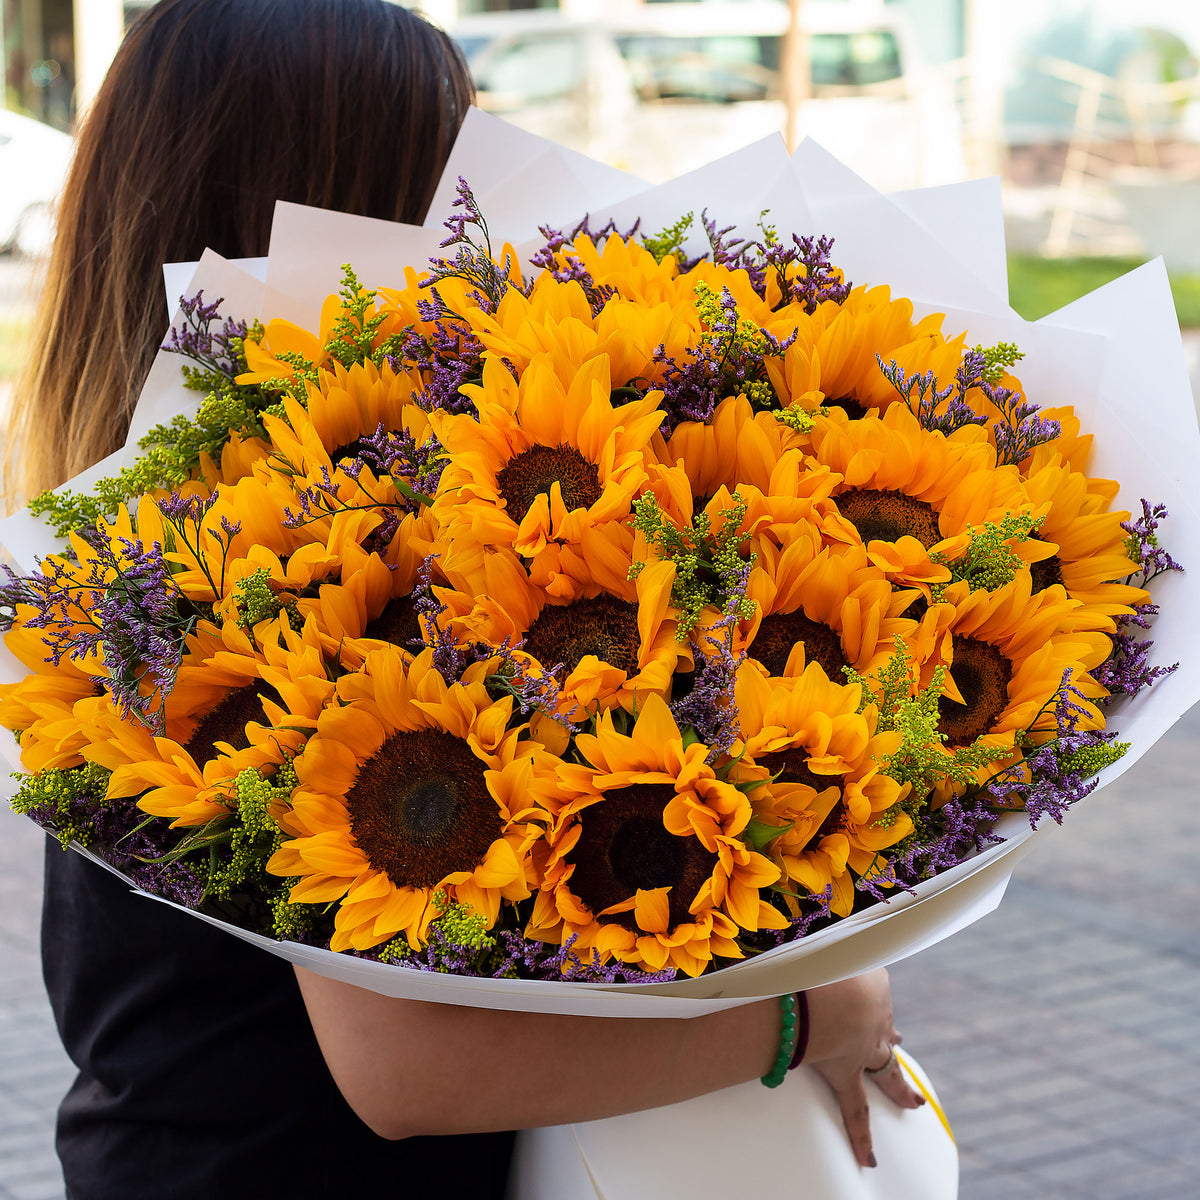 25 Sunflowers